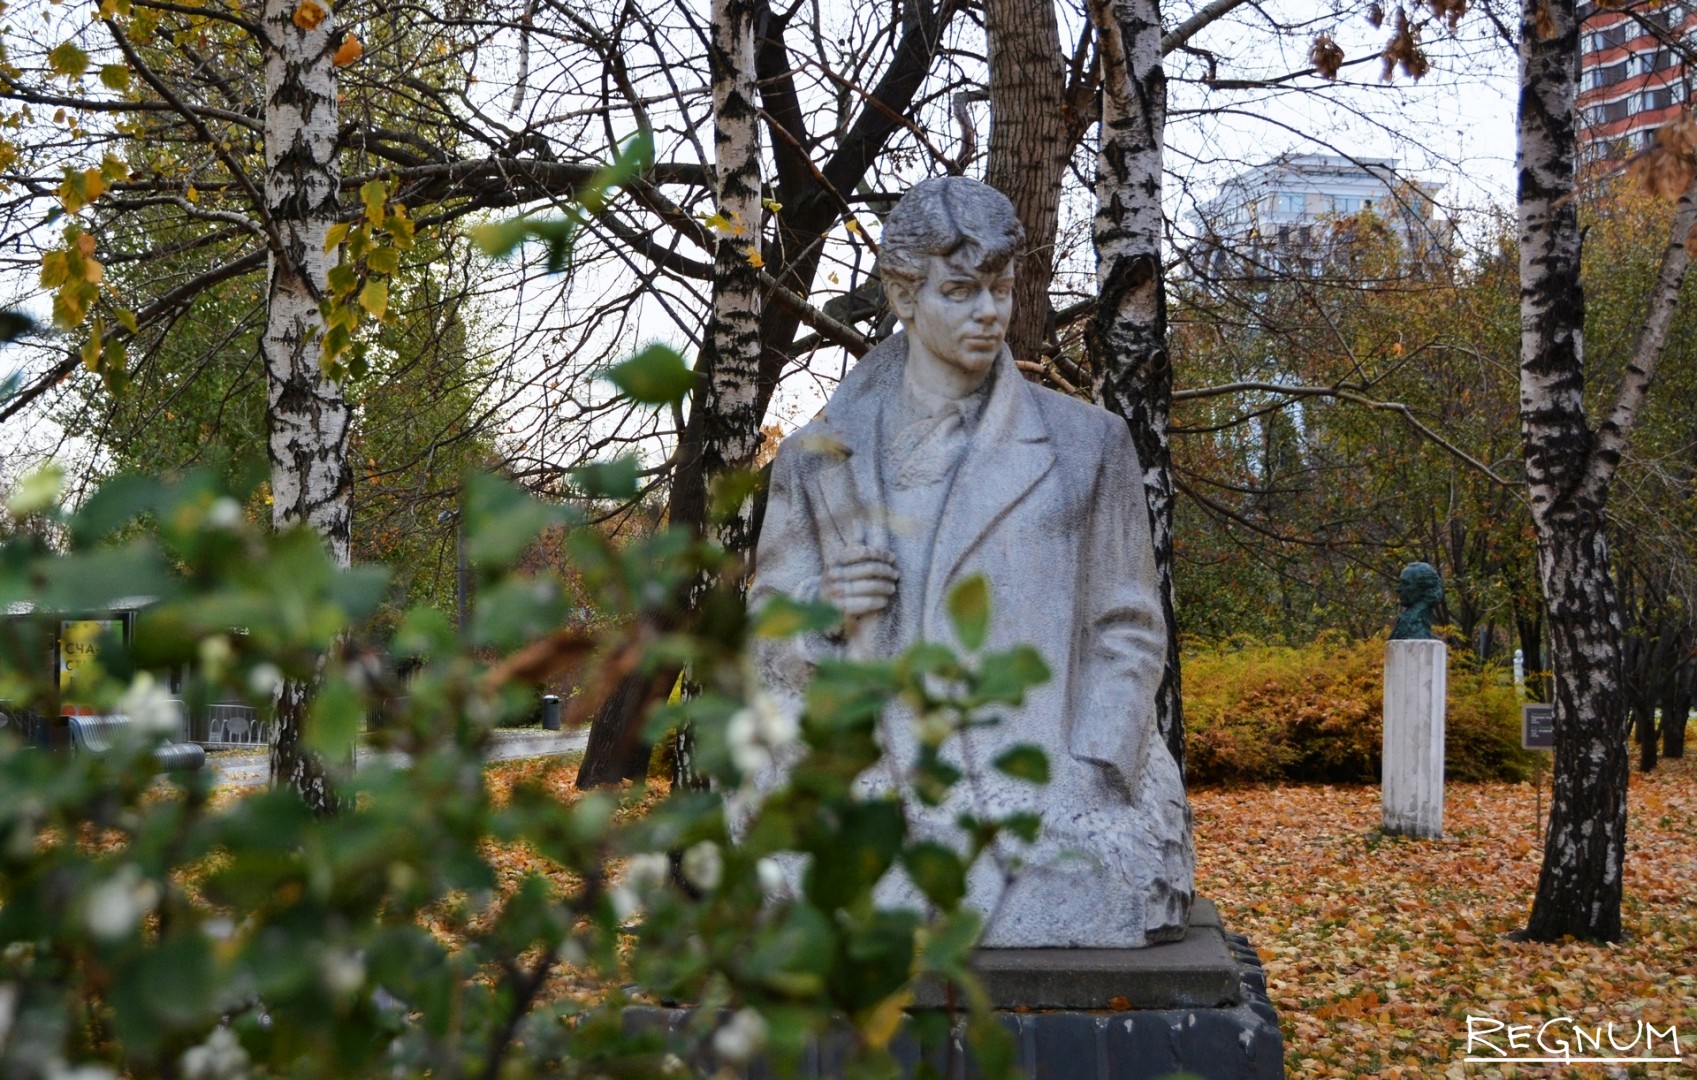 Памятник есенину в москве новый